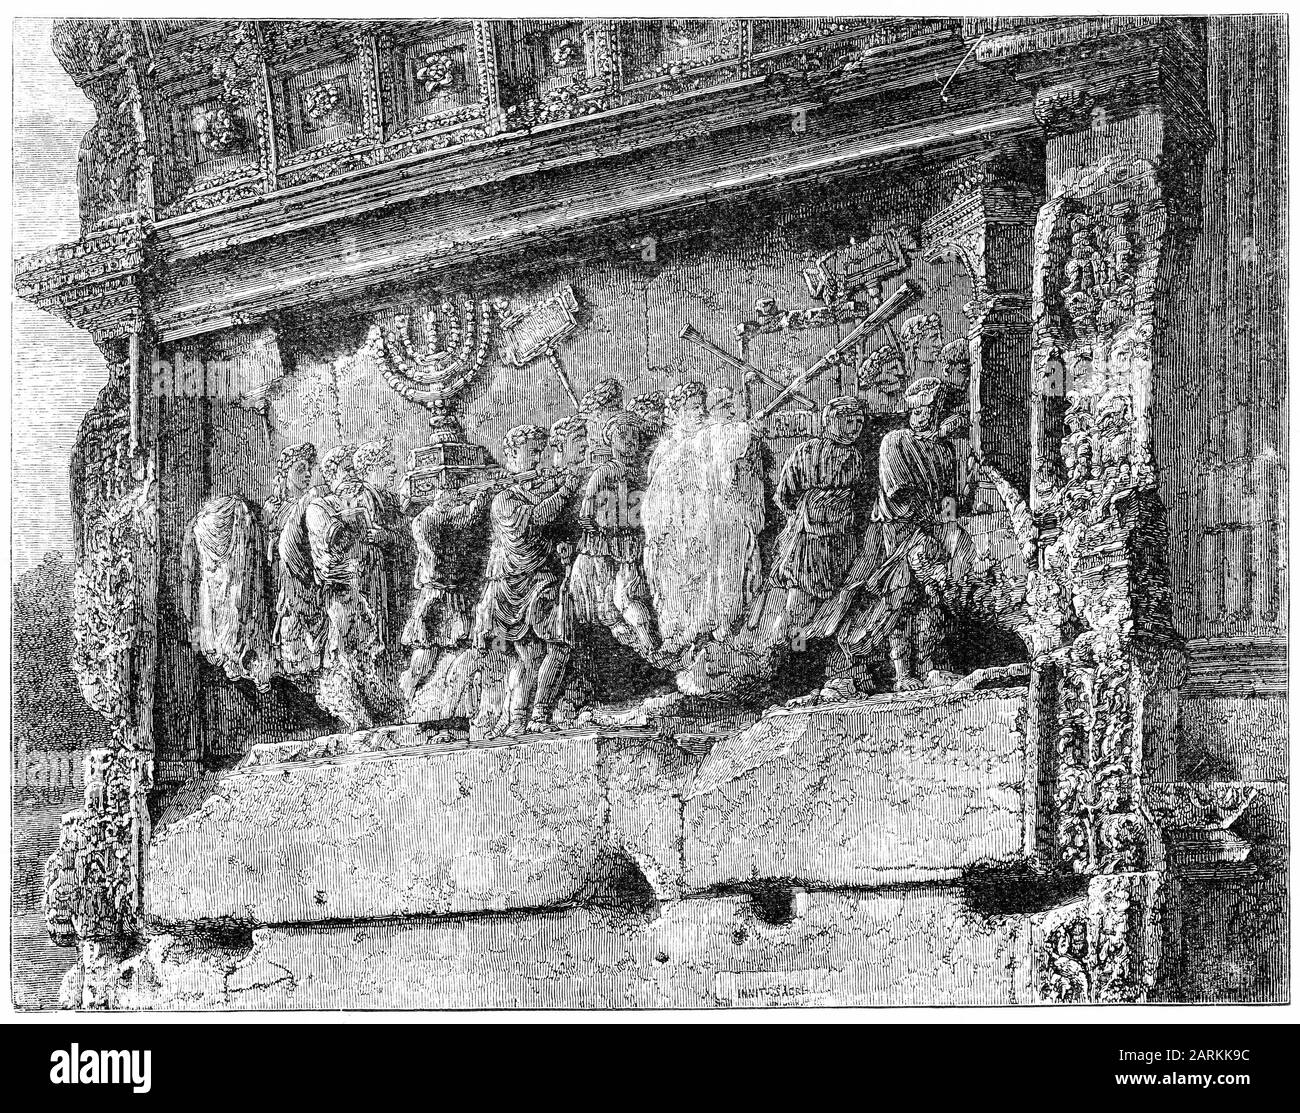 Gravur der römischen Aufzeichnungen über die Zerstörung Jerusalems, die in den Titusbogen eingemeißelt wurden und Soldaten zeigen, die heilige Gegenstände aus Herodes Tempel - den Kerzenleuchter, einen Tisch mit Schewbrot und Trompete - abtragen. Stockfoto